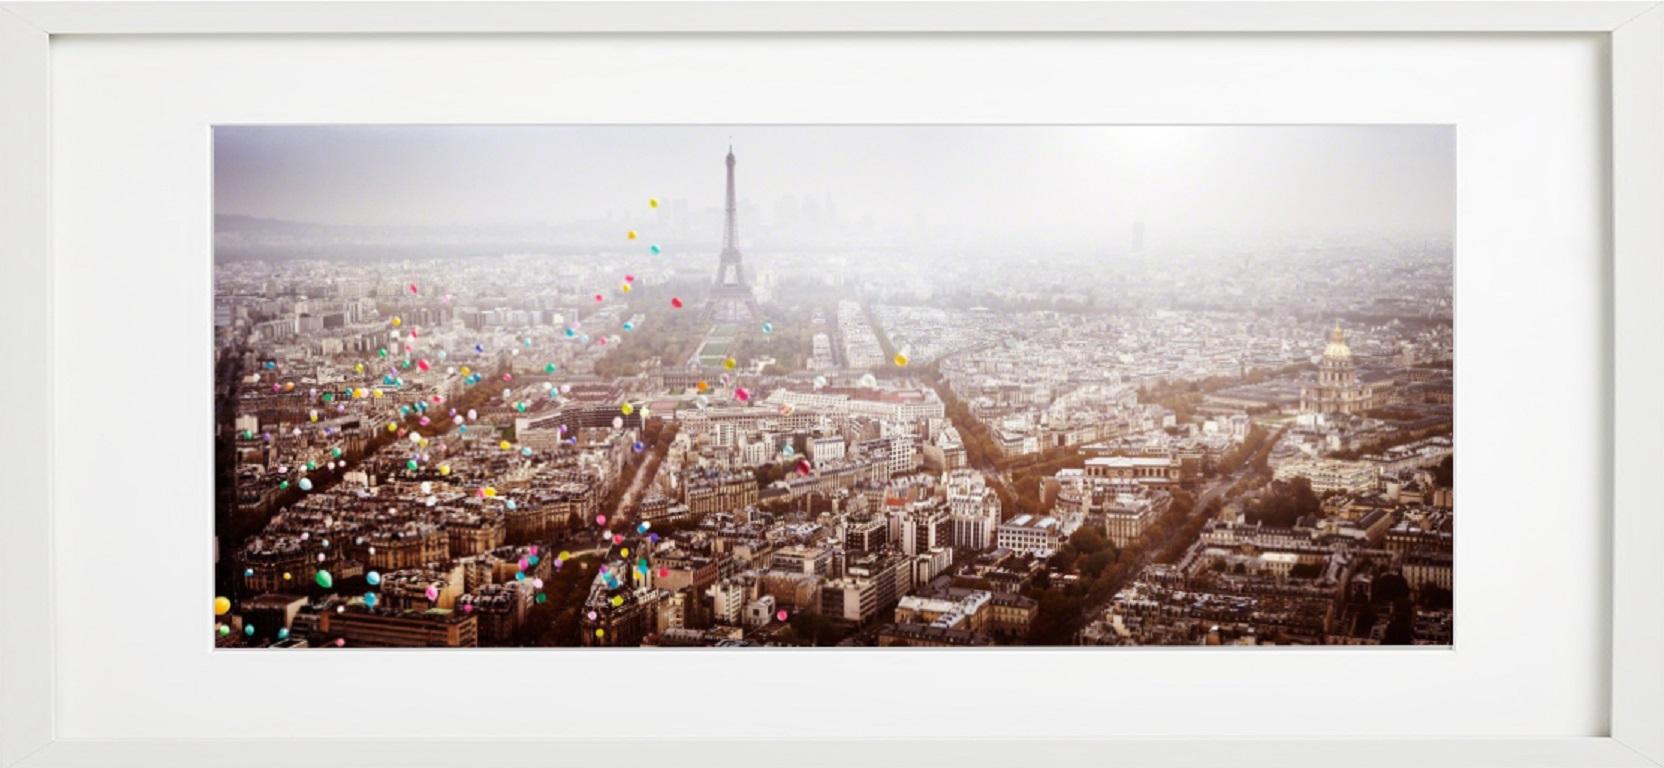 Ballons au-dessus de Paris (France) - vue aérienne de Paris avec ballons de la Tour Eiffel  - Contemporain Photograph par David Drebin